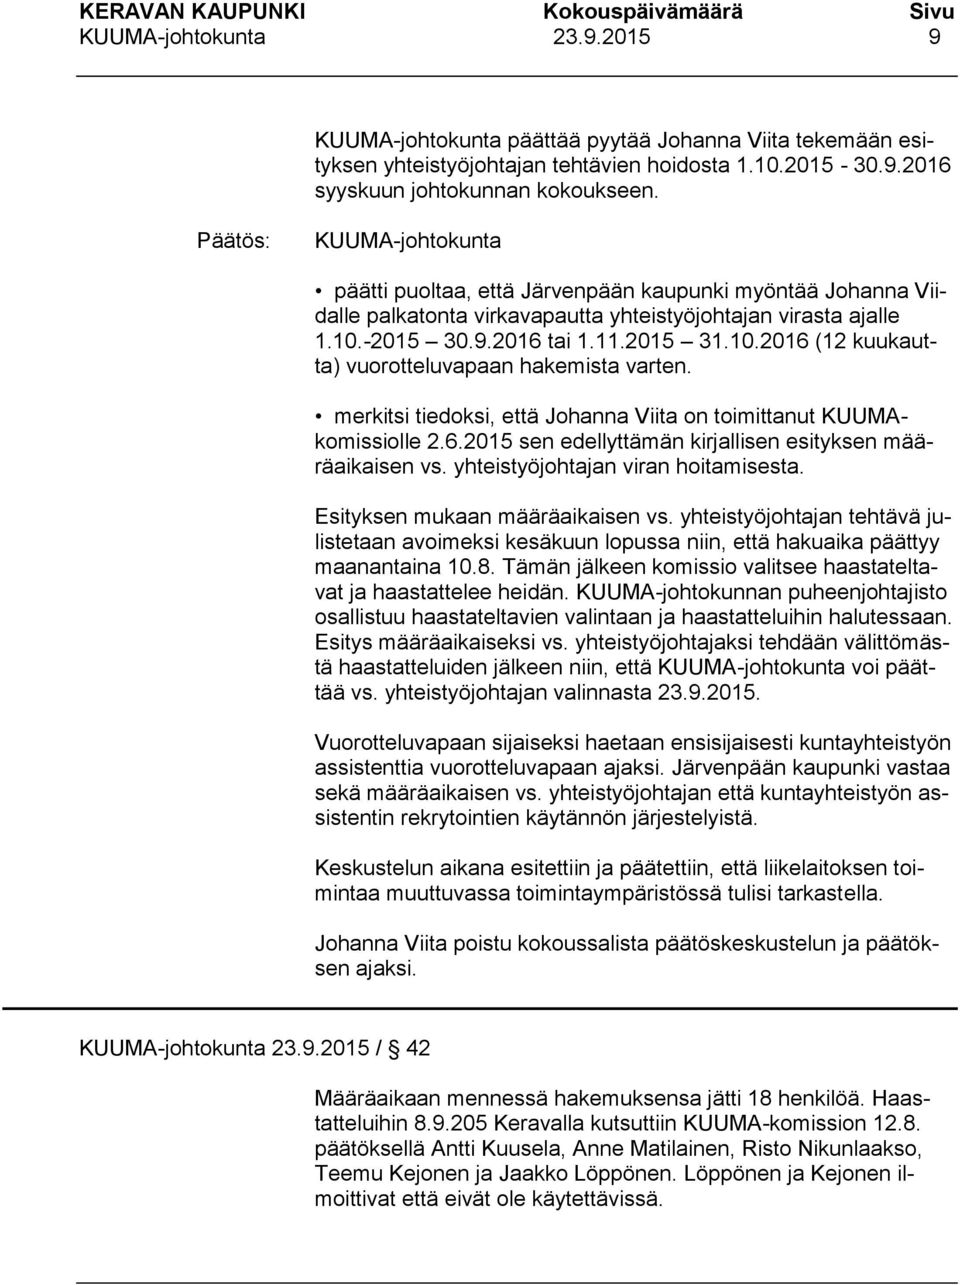 merkitsi tiedoksi, että Johanna Viita on toimittanut KUUMAkomissiolle 2.6.2015 sen edellyttämän kirjallisen esityksen määräaikaisen vs. yhteistyöjohtajan viran hoitamisesta.